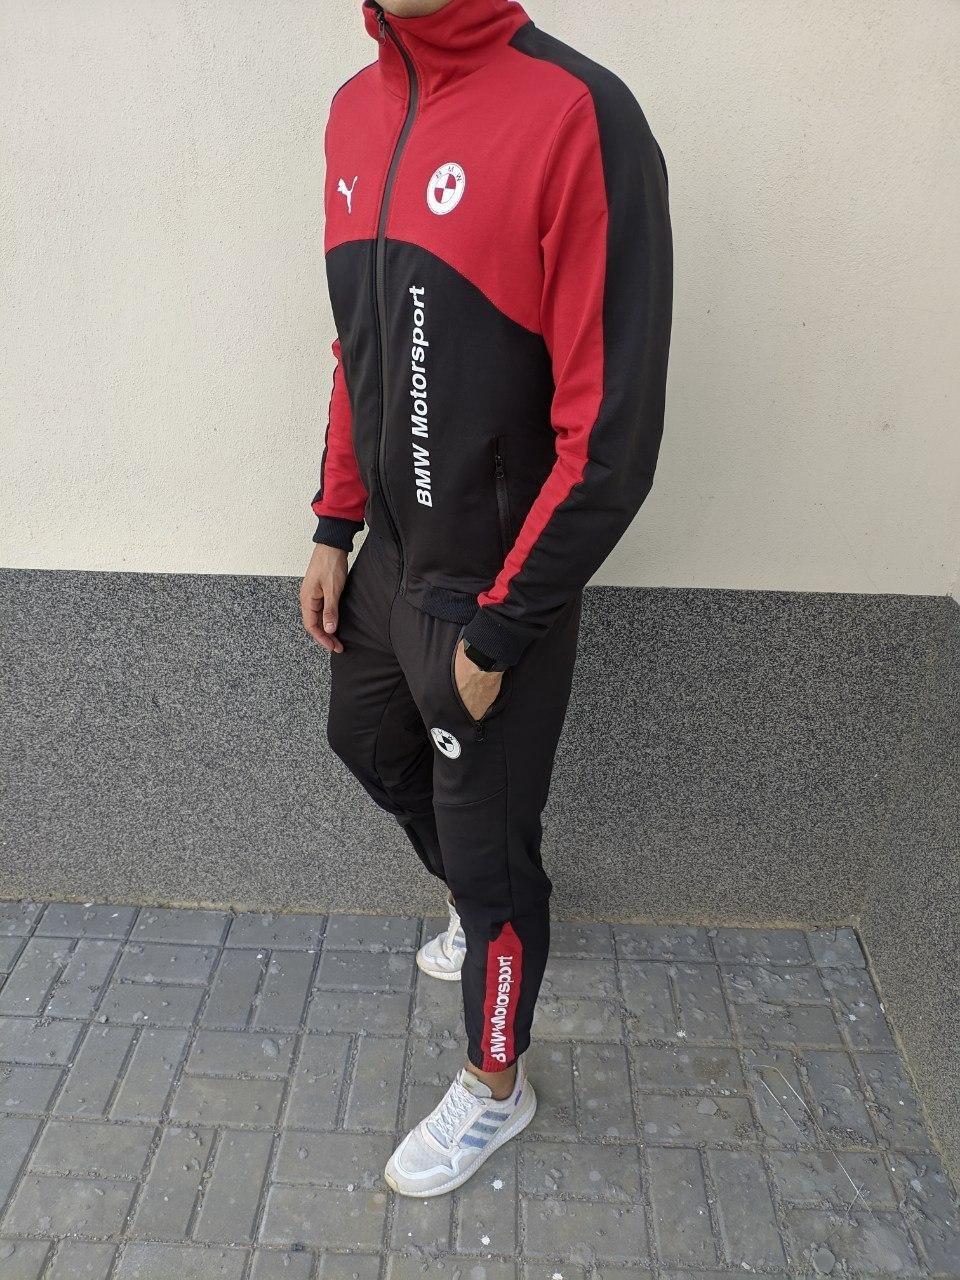 Спортивный костюм Puma BMW Motorsport черно-красный мужской осенний де: 899  грн. - Спортивные костюмы Киев на BESPLATKA.ua 88592580